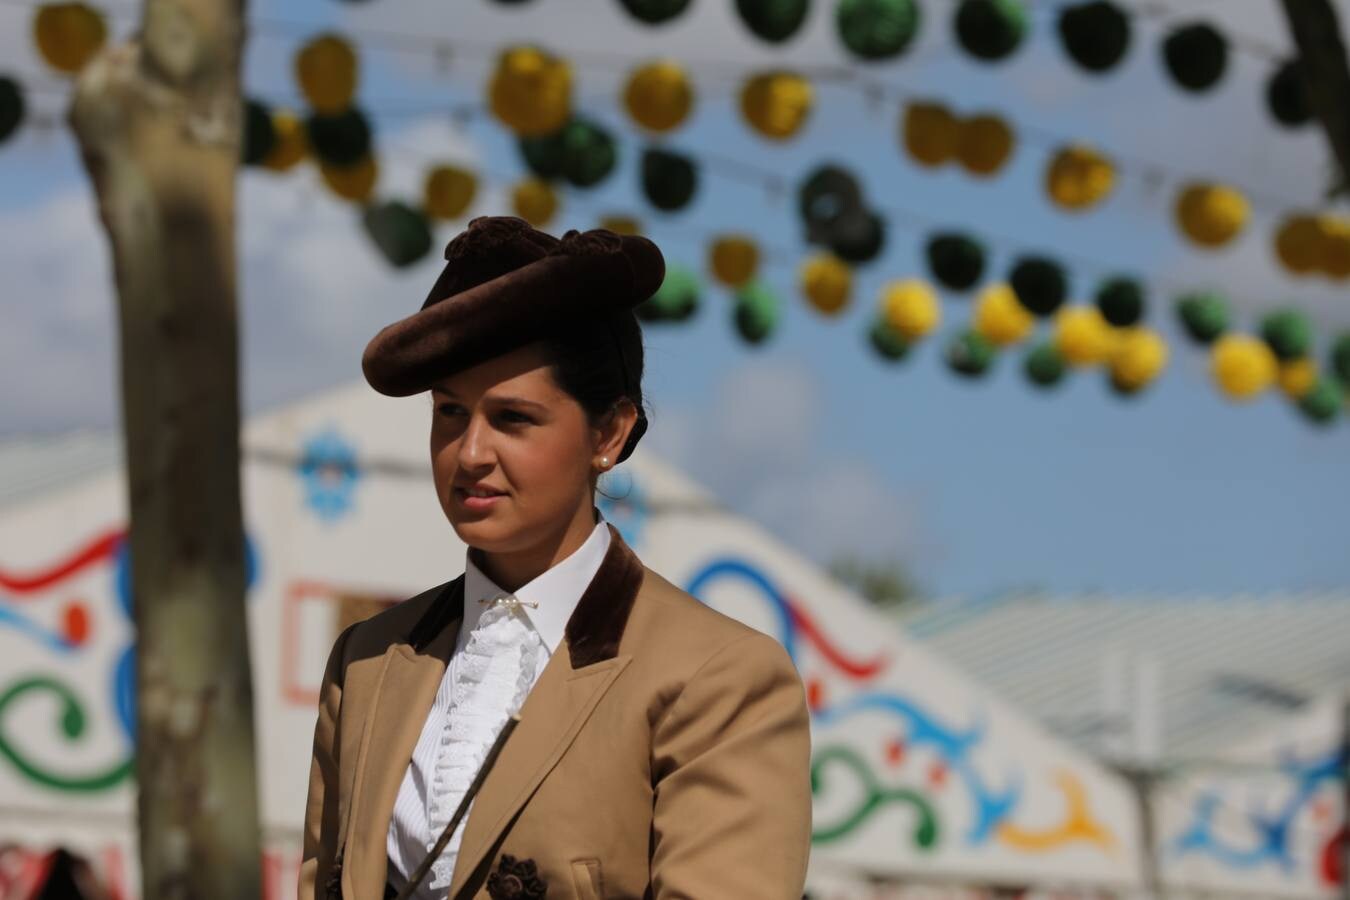 FOTOS: La Feria de El Puerto 2018 encara su recta final